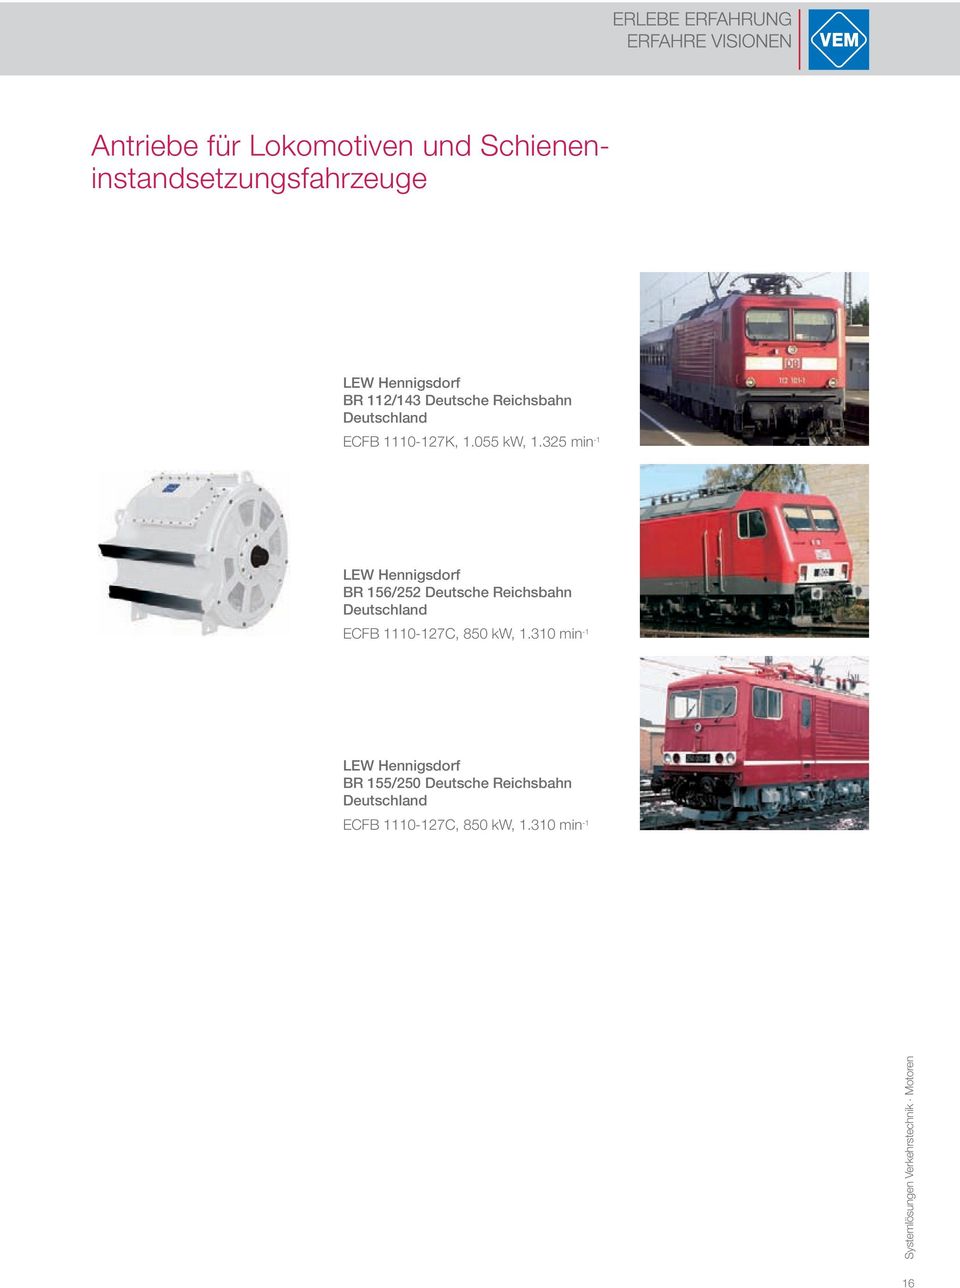 325 min -1 LEW Hennigsdorf BR 156/252 Deutsche Reichsbahn ECFB 1110-127C, 850